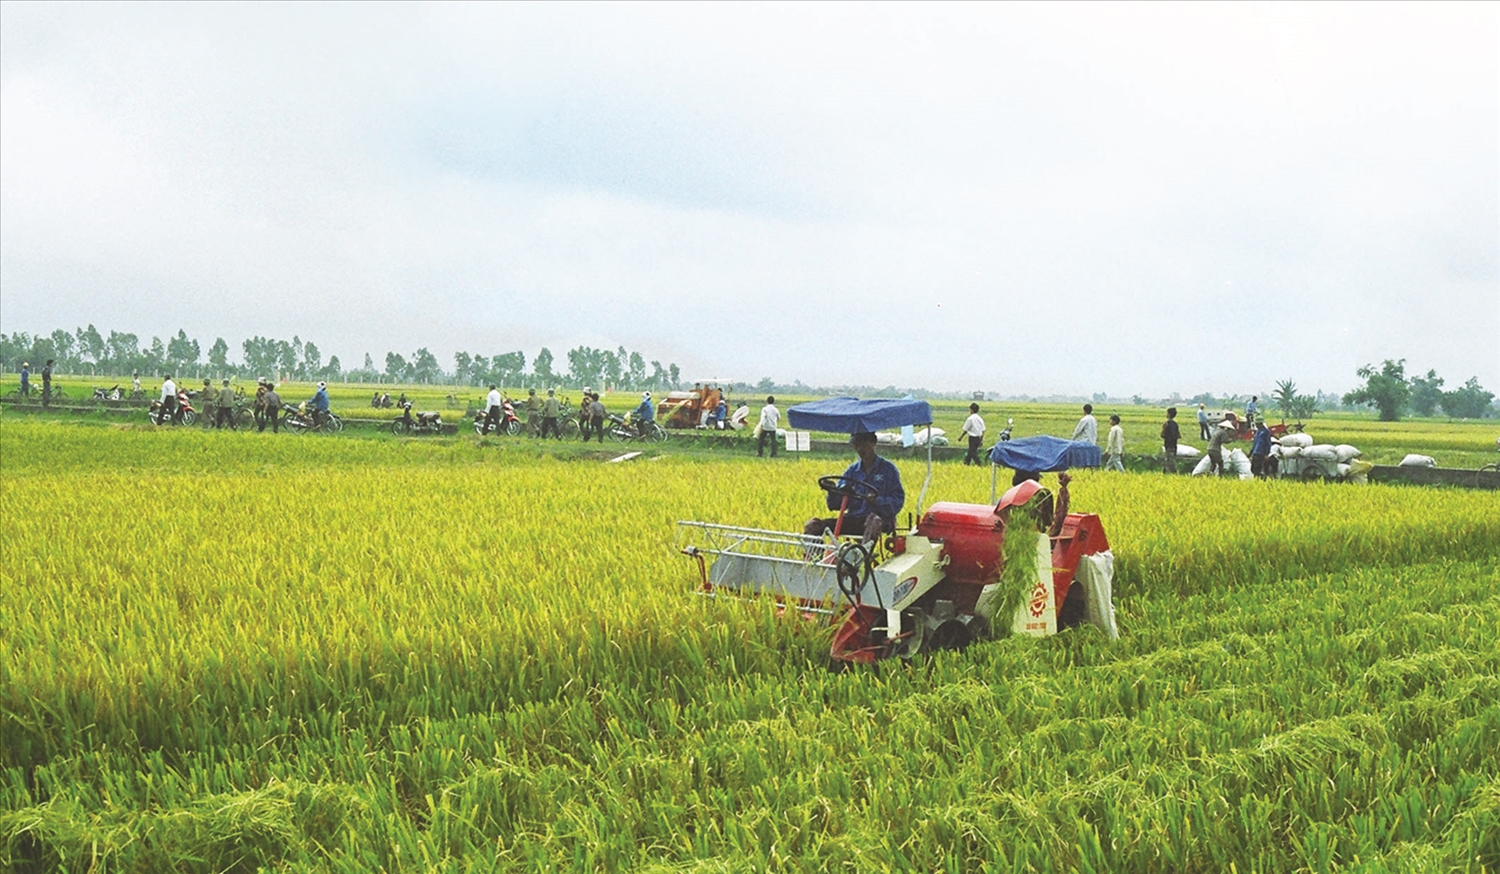 Trung tâm dịch vụ miền núi tỉnh Bình Thuận cung cấp giống lúa lai chất lượng cao để bà con đồng bào DTTS sản xuất hiệu quả